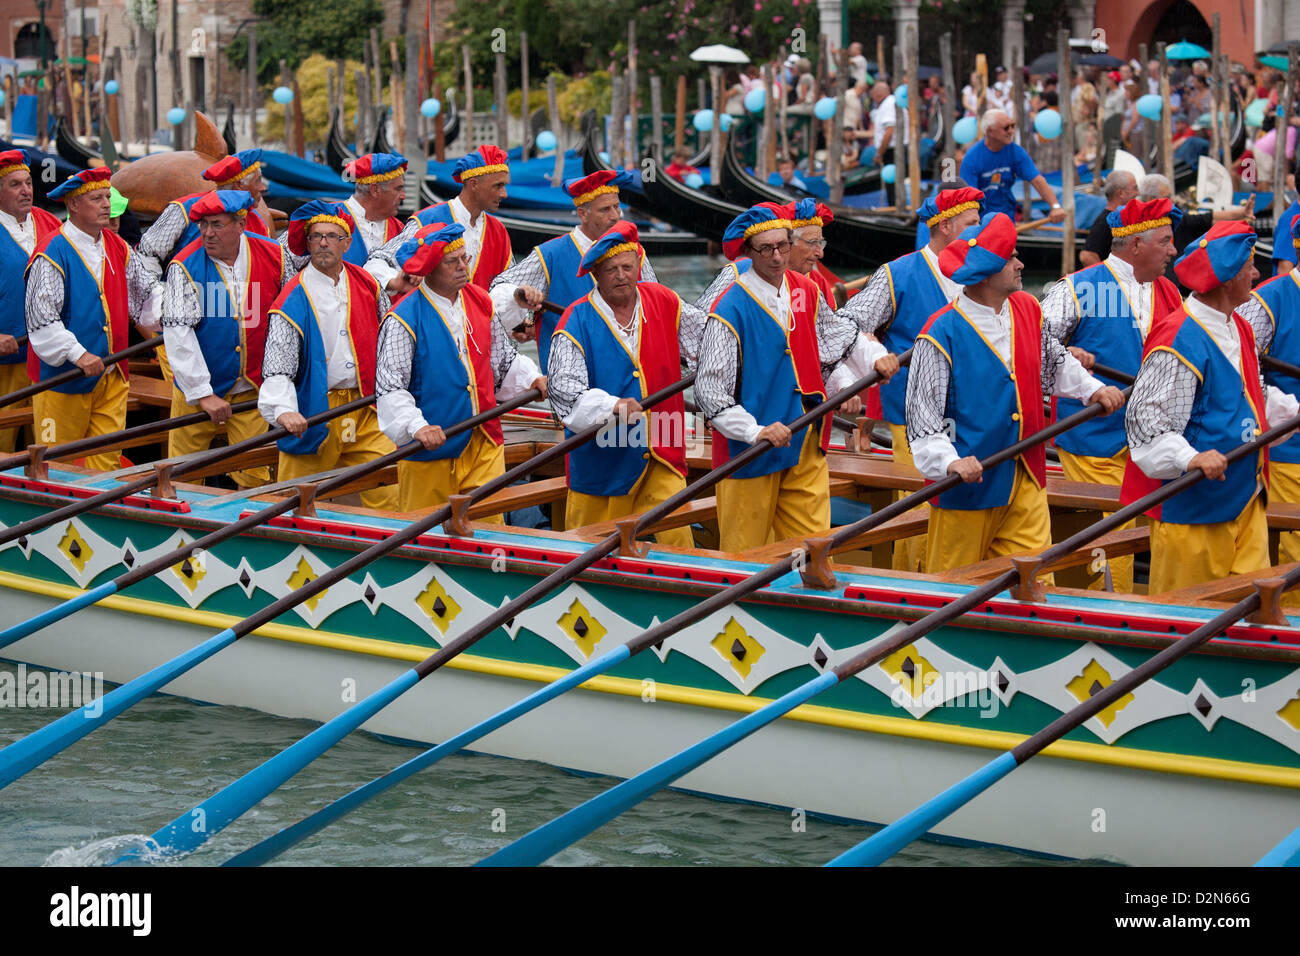 Regata Storica di Venezia, the most important traditional event in